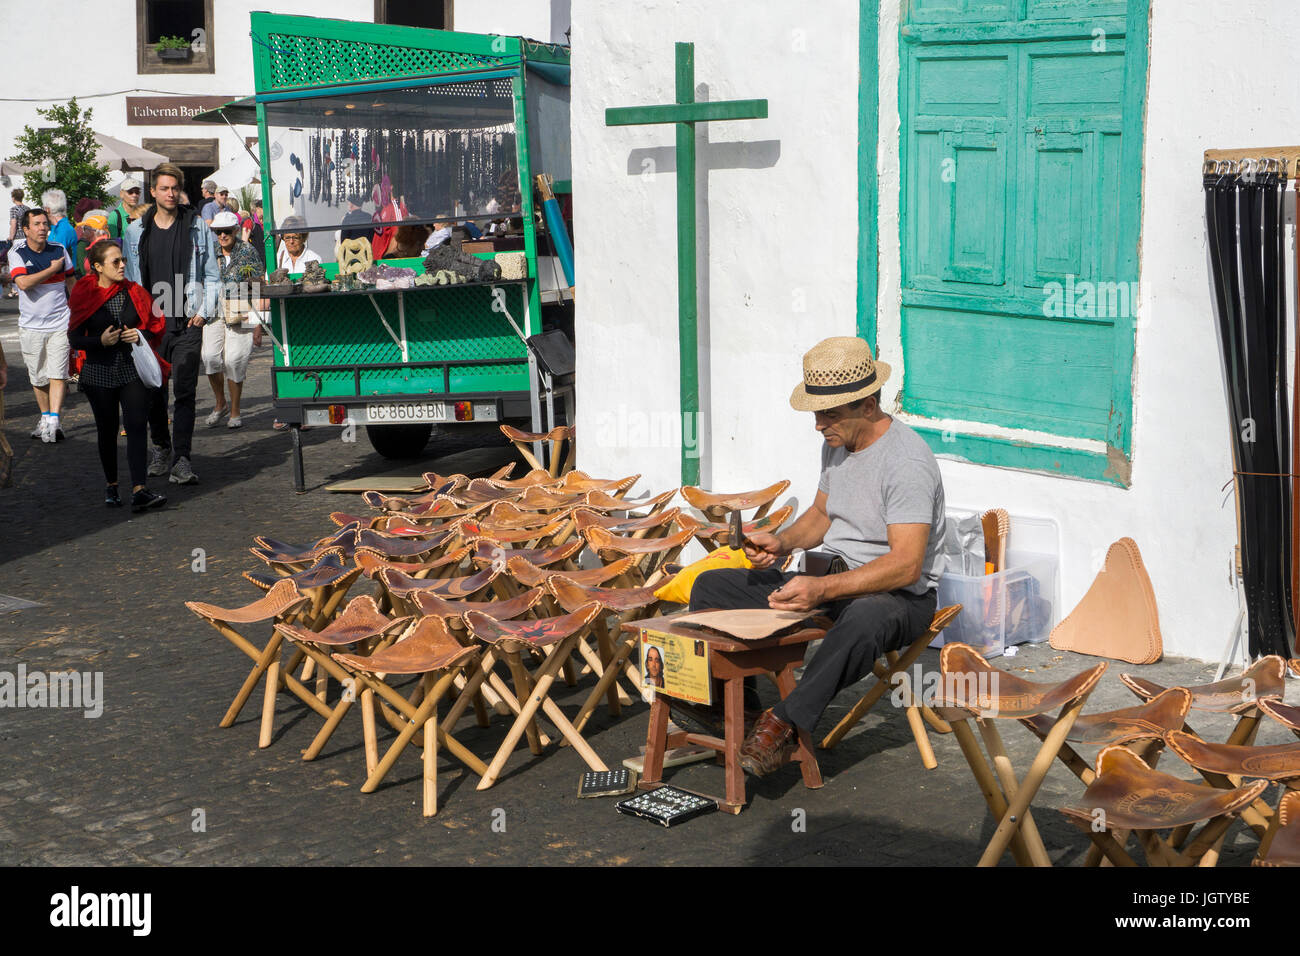 Canaria di artigiano produce camp-sedie wit sedili in pelle, settimanale mercato di domenica, Teguise, Lanzarote, Isole canarie, Spagna, Europa Foto Stock